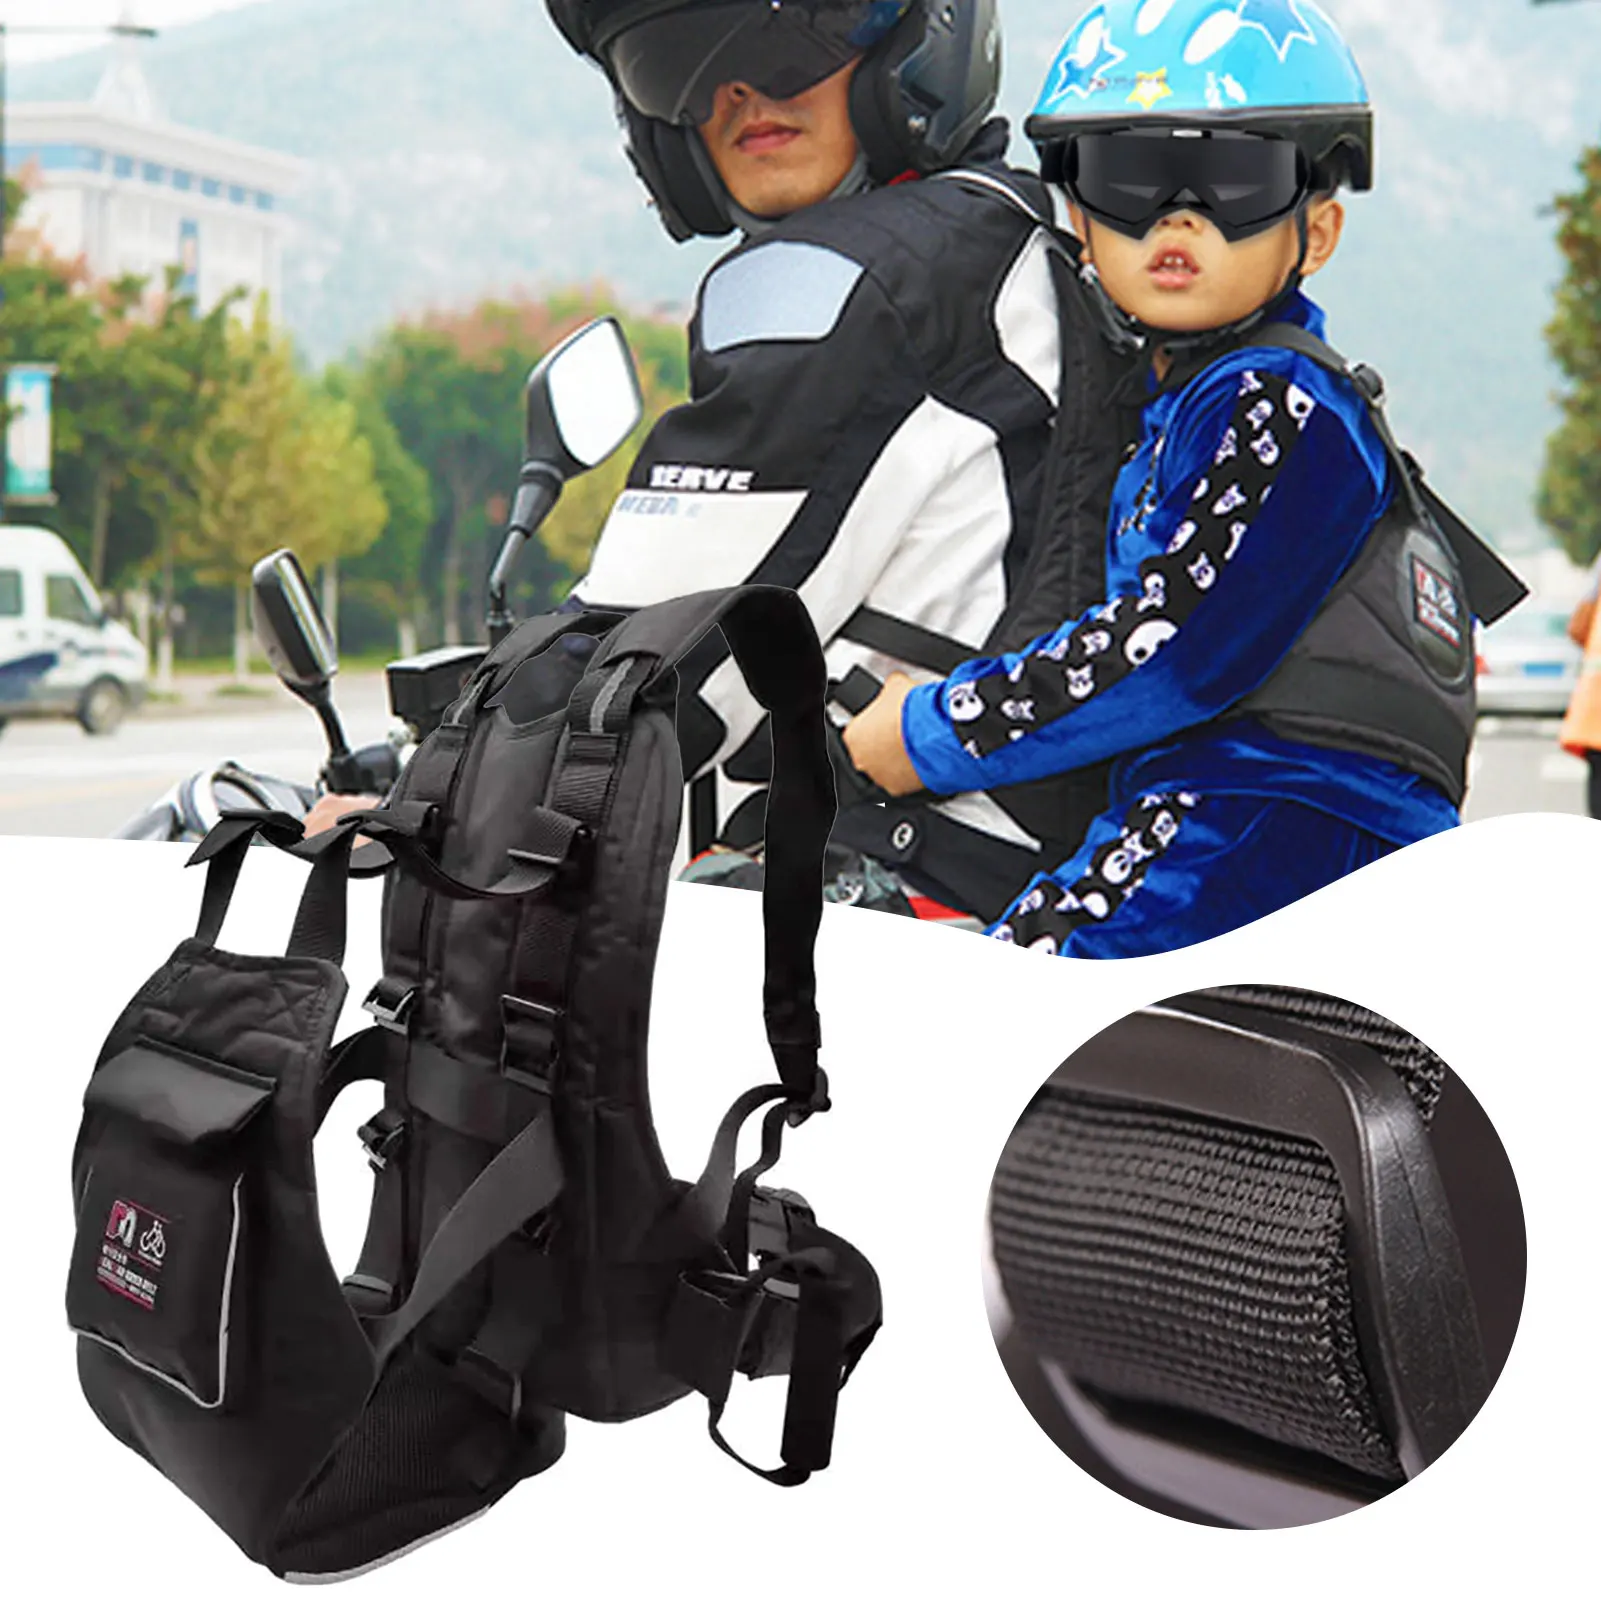 Универсальный детский ремень безопасности для мотоцикла с сумкой | Отзывы и видеообзор -1005004520024176